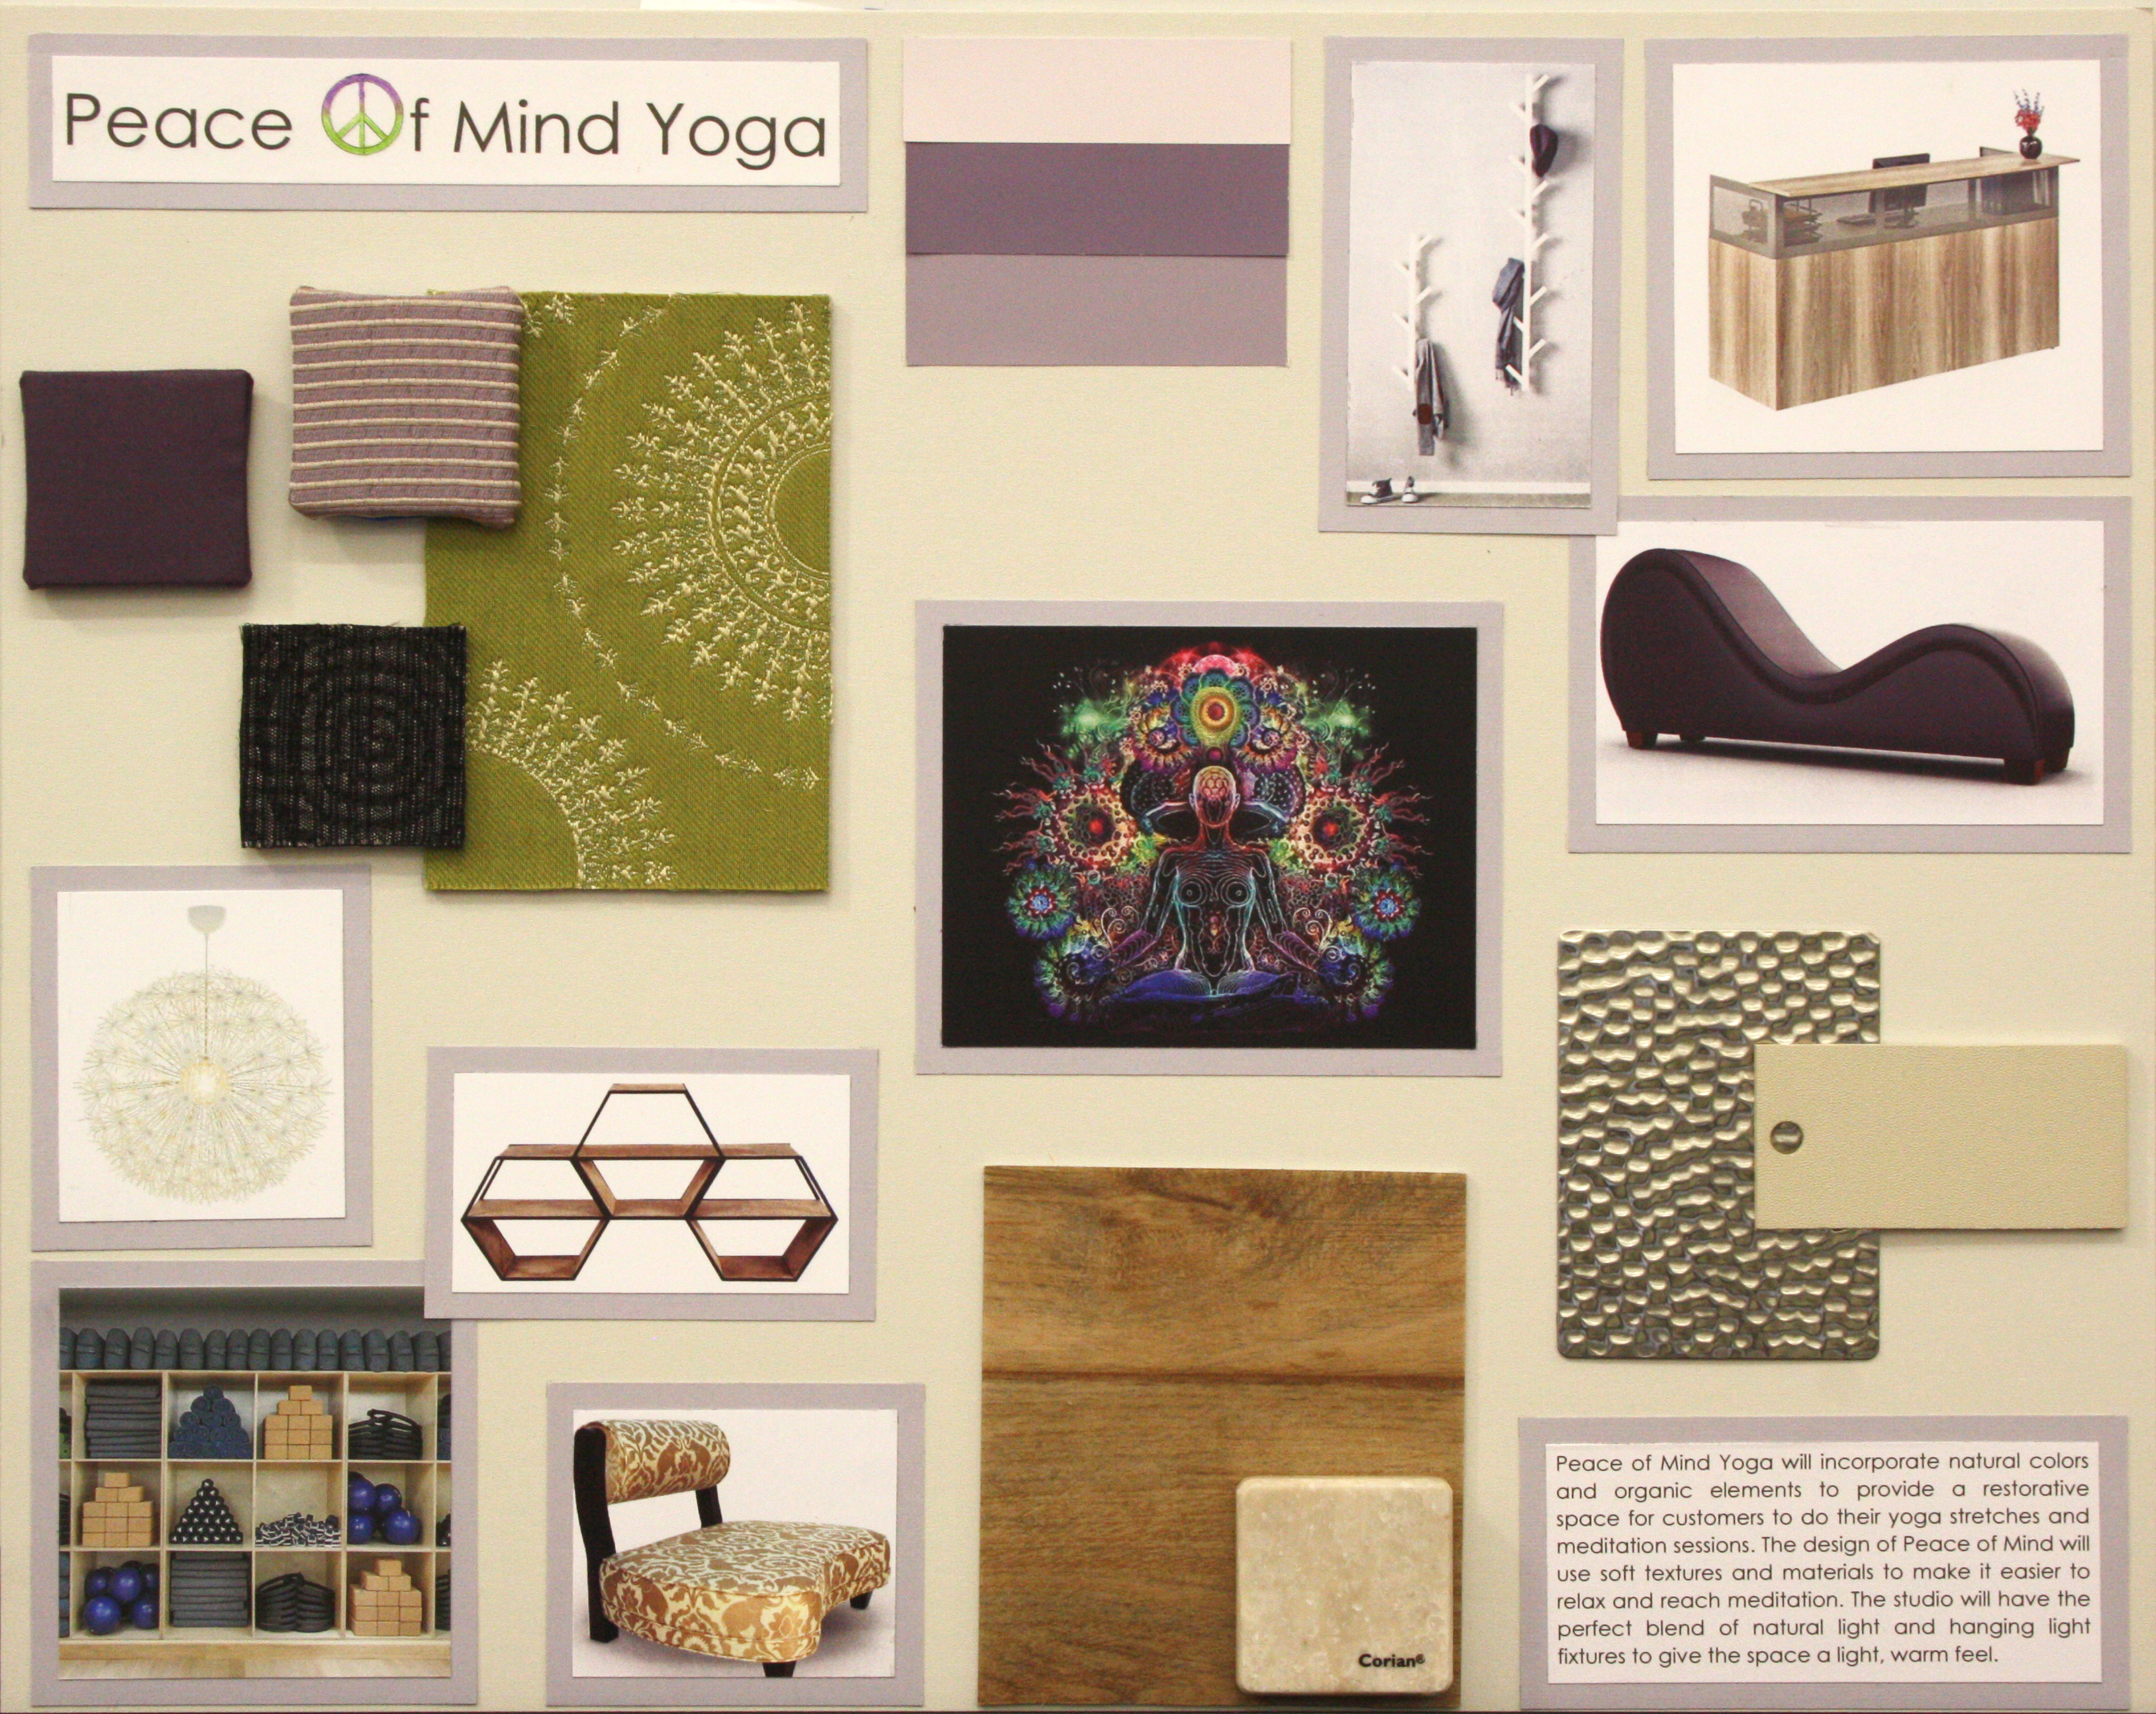 Concept board for the interior design of a yoga studio.